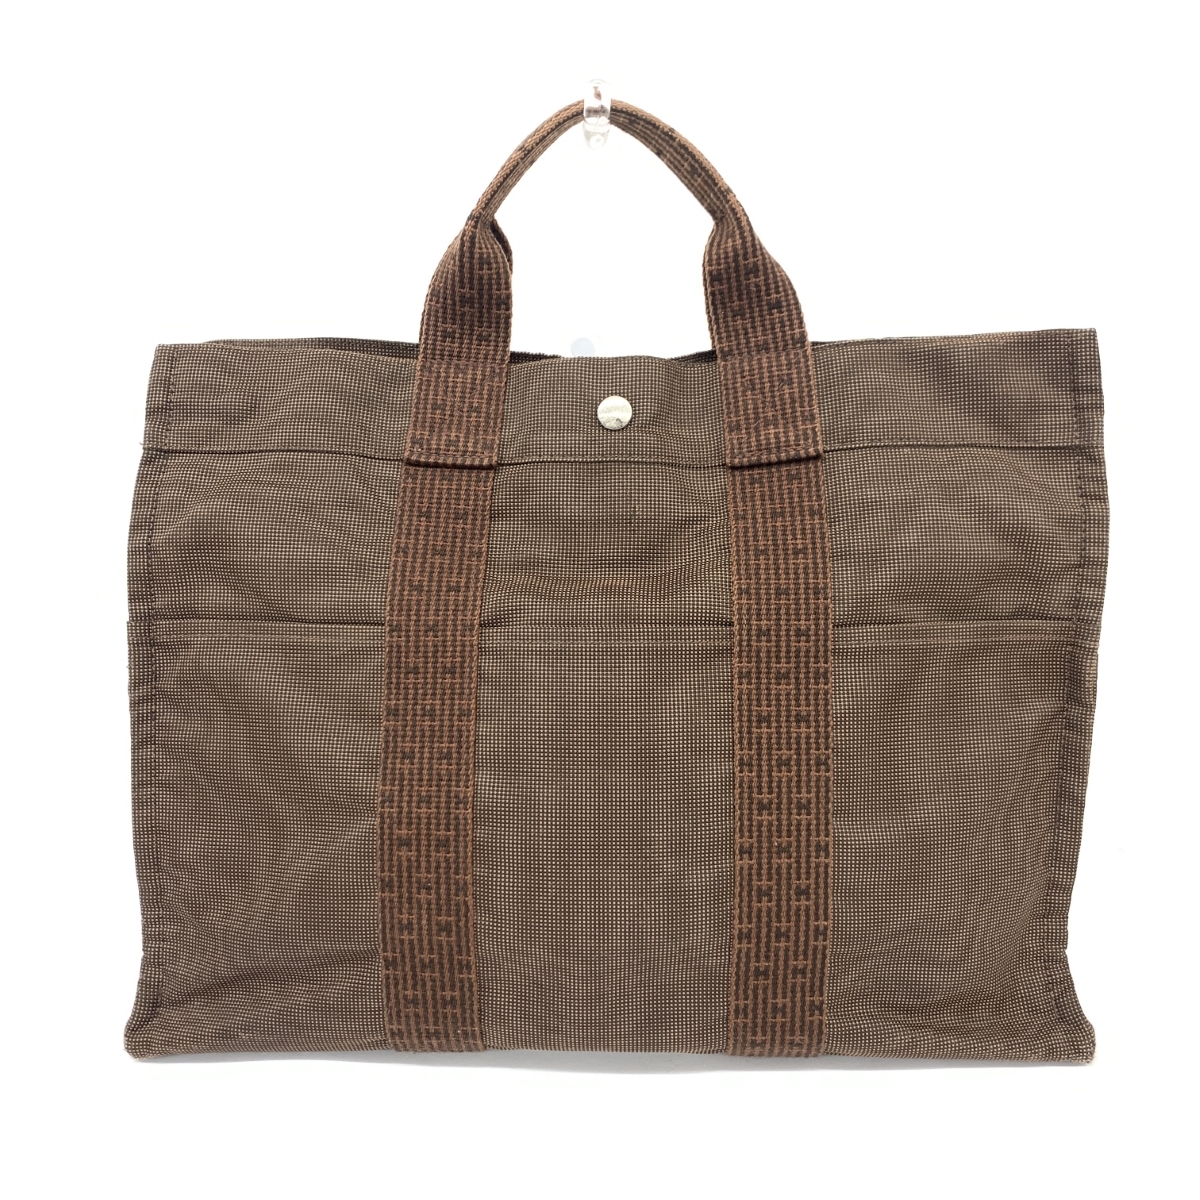 ◆HERMES エルメス エールライン トートバッグ◆ ブラウン キャンバス ユニセックス bag 鞄